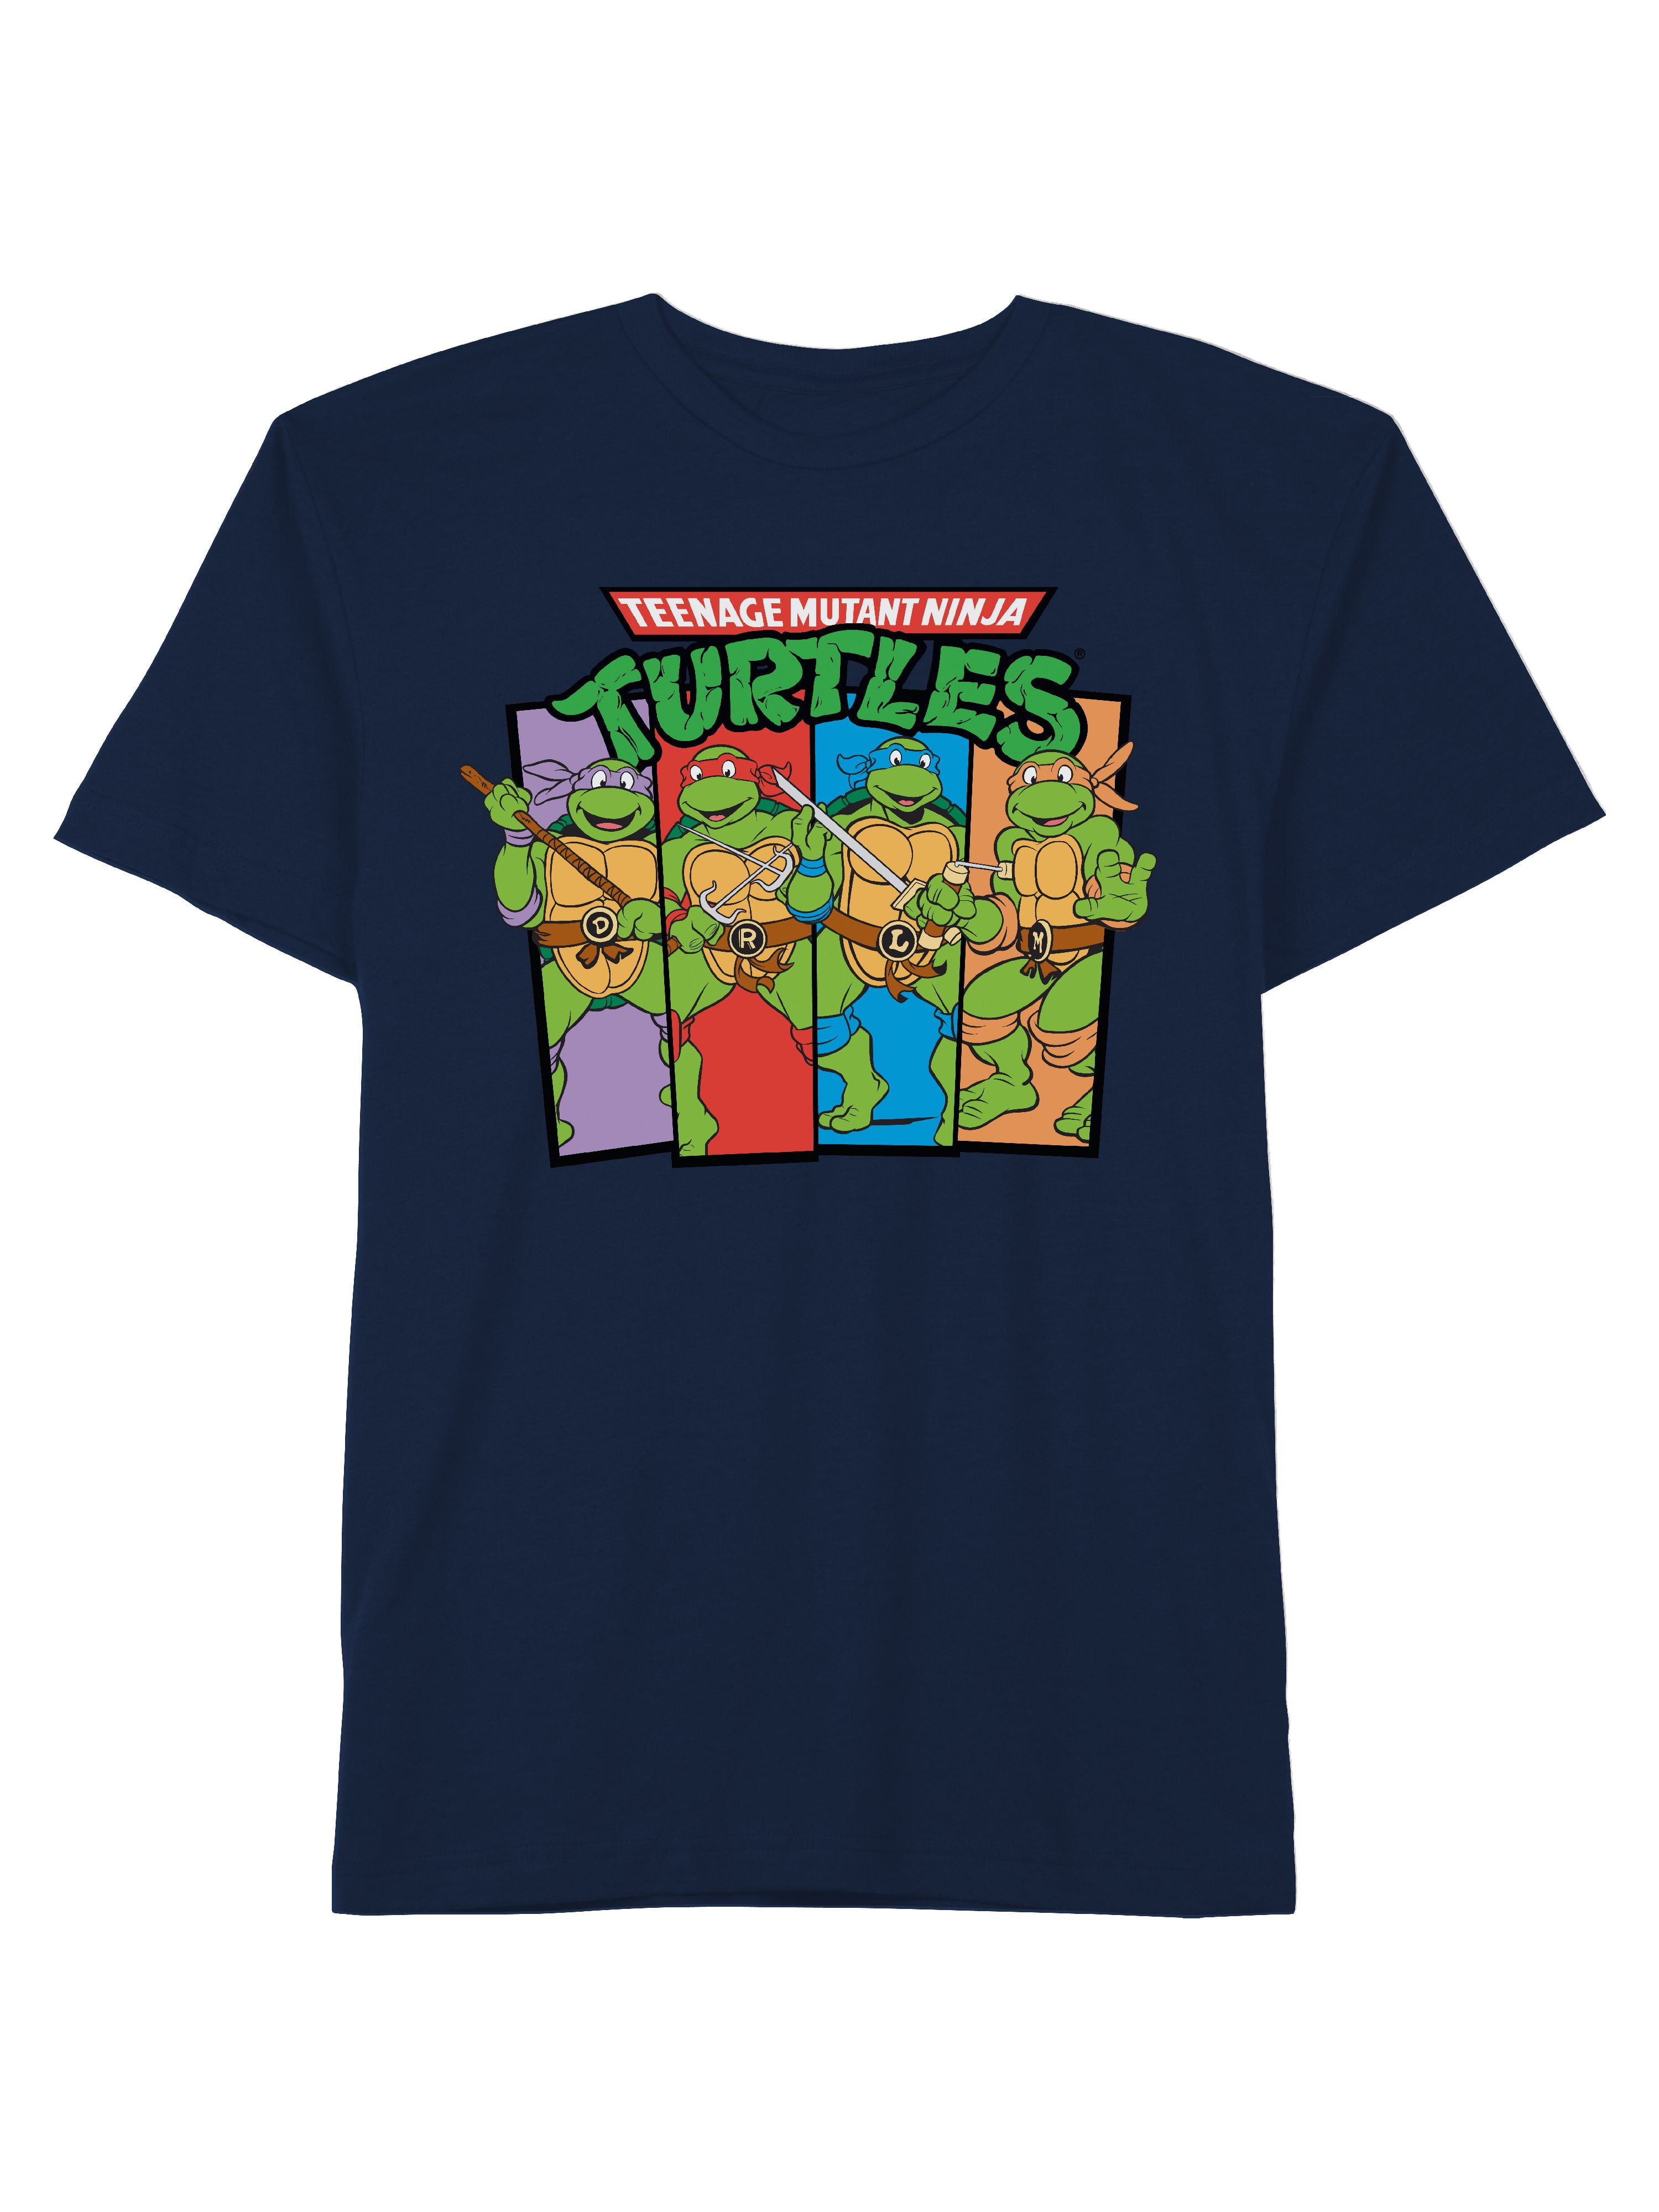 Teenage Mutant Ninja Turtles 1984 Heroes Men's T-Shirt